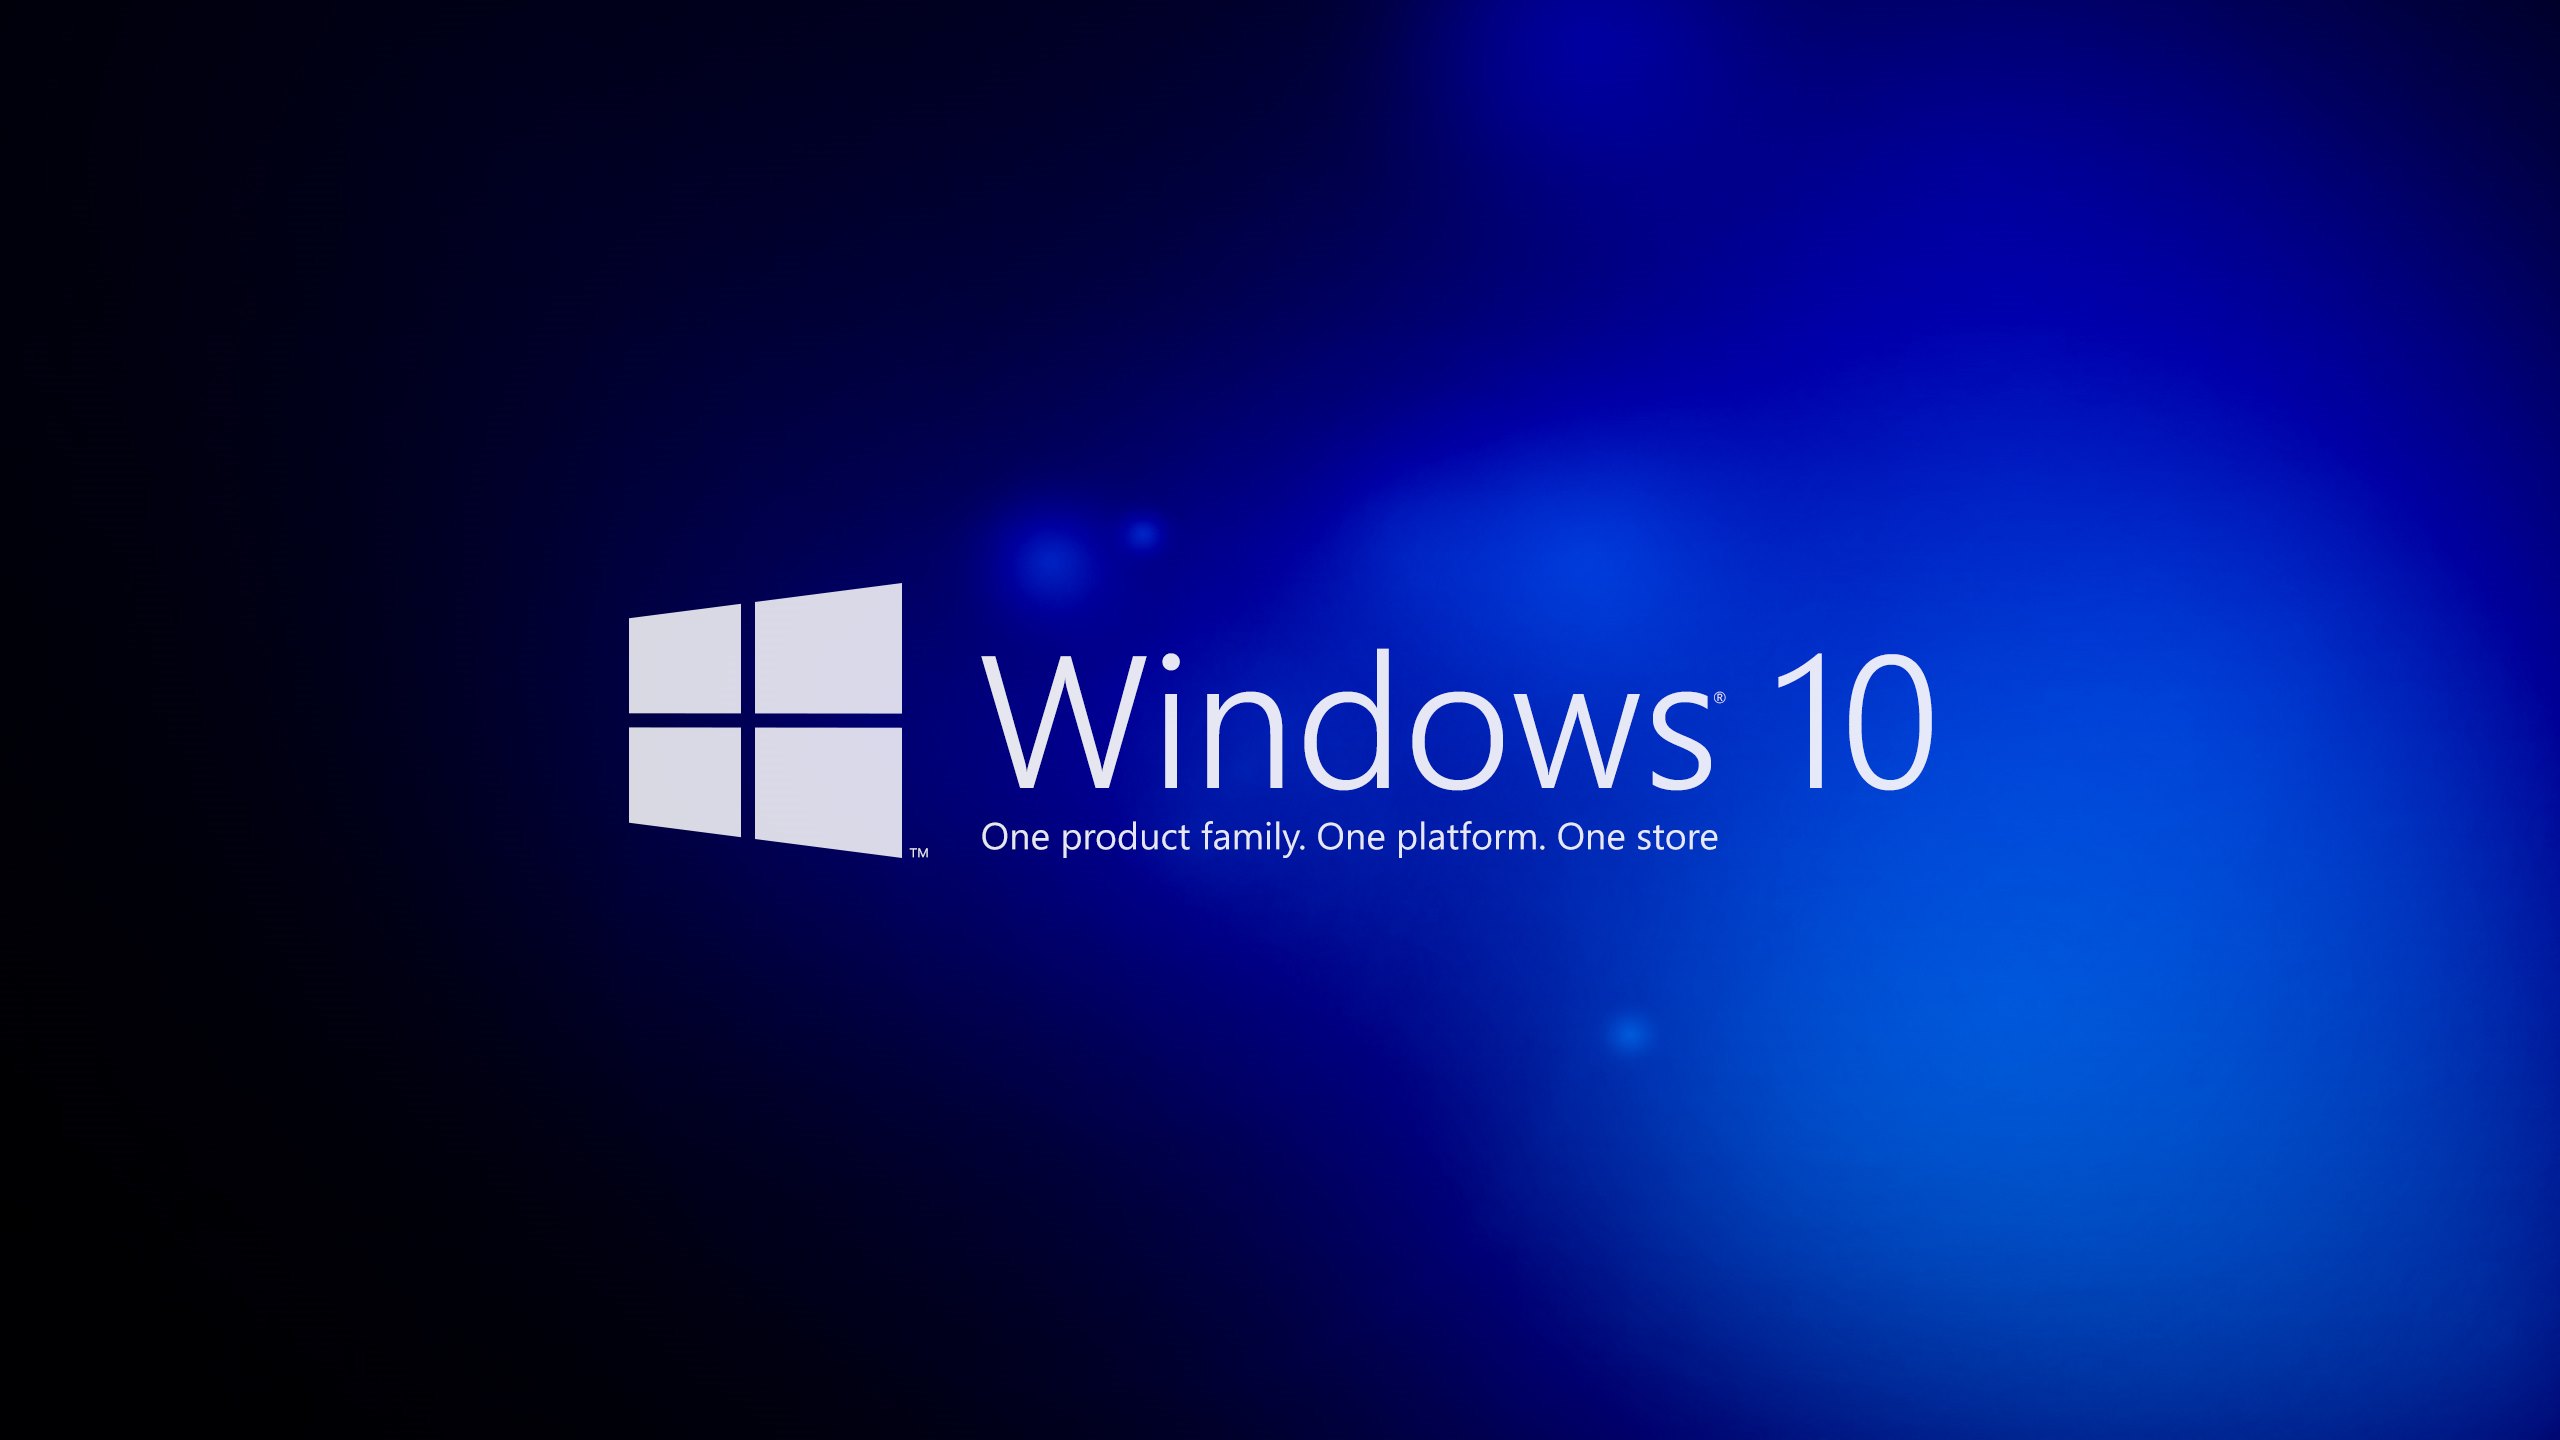 Cá nhân hóa máy tính chạy Windows 10 theo cách riêng của bạn